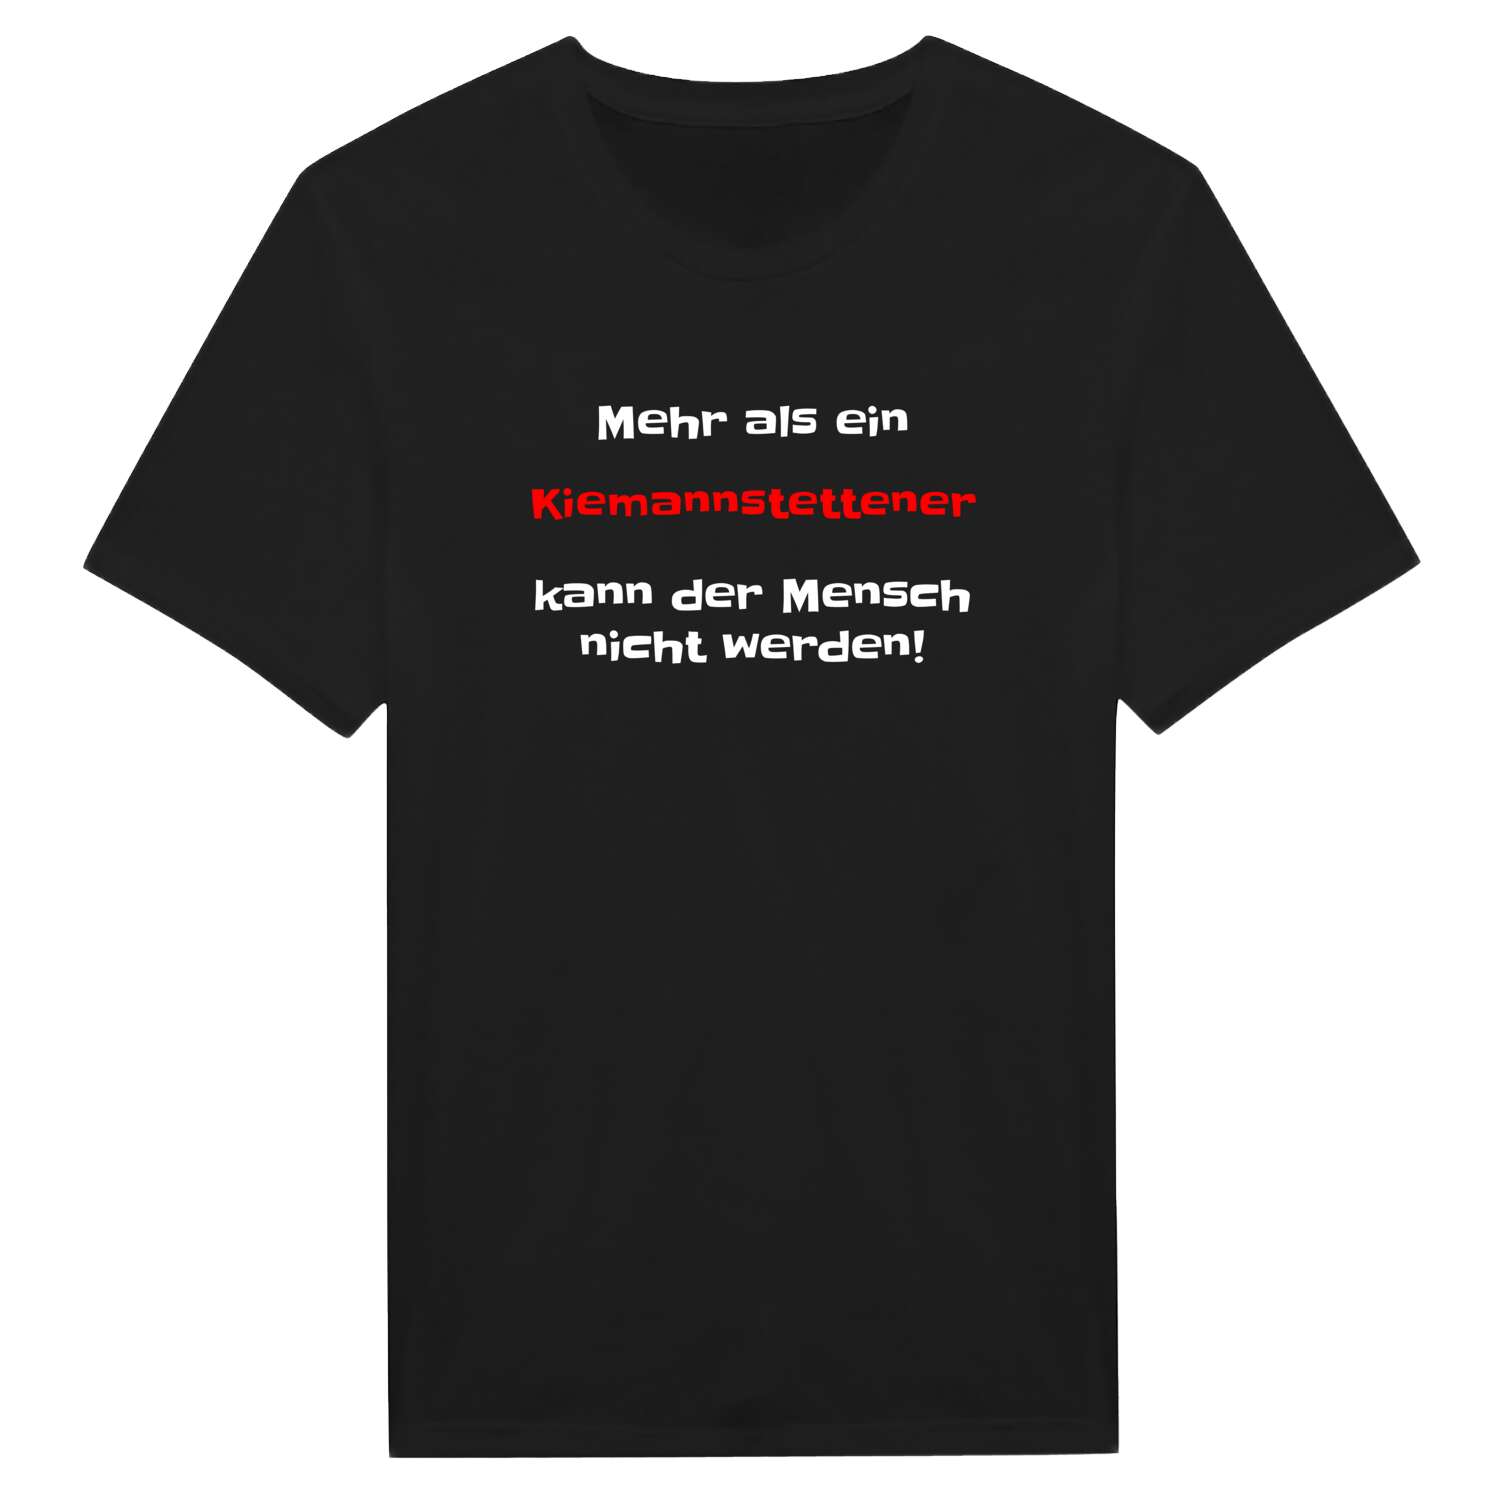 Kiemannstetten T-Shirt »Mehr als ein«